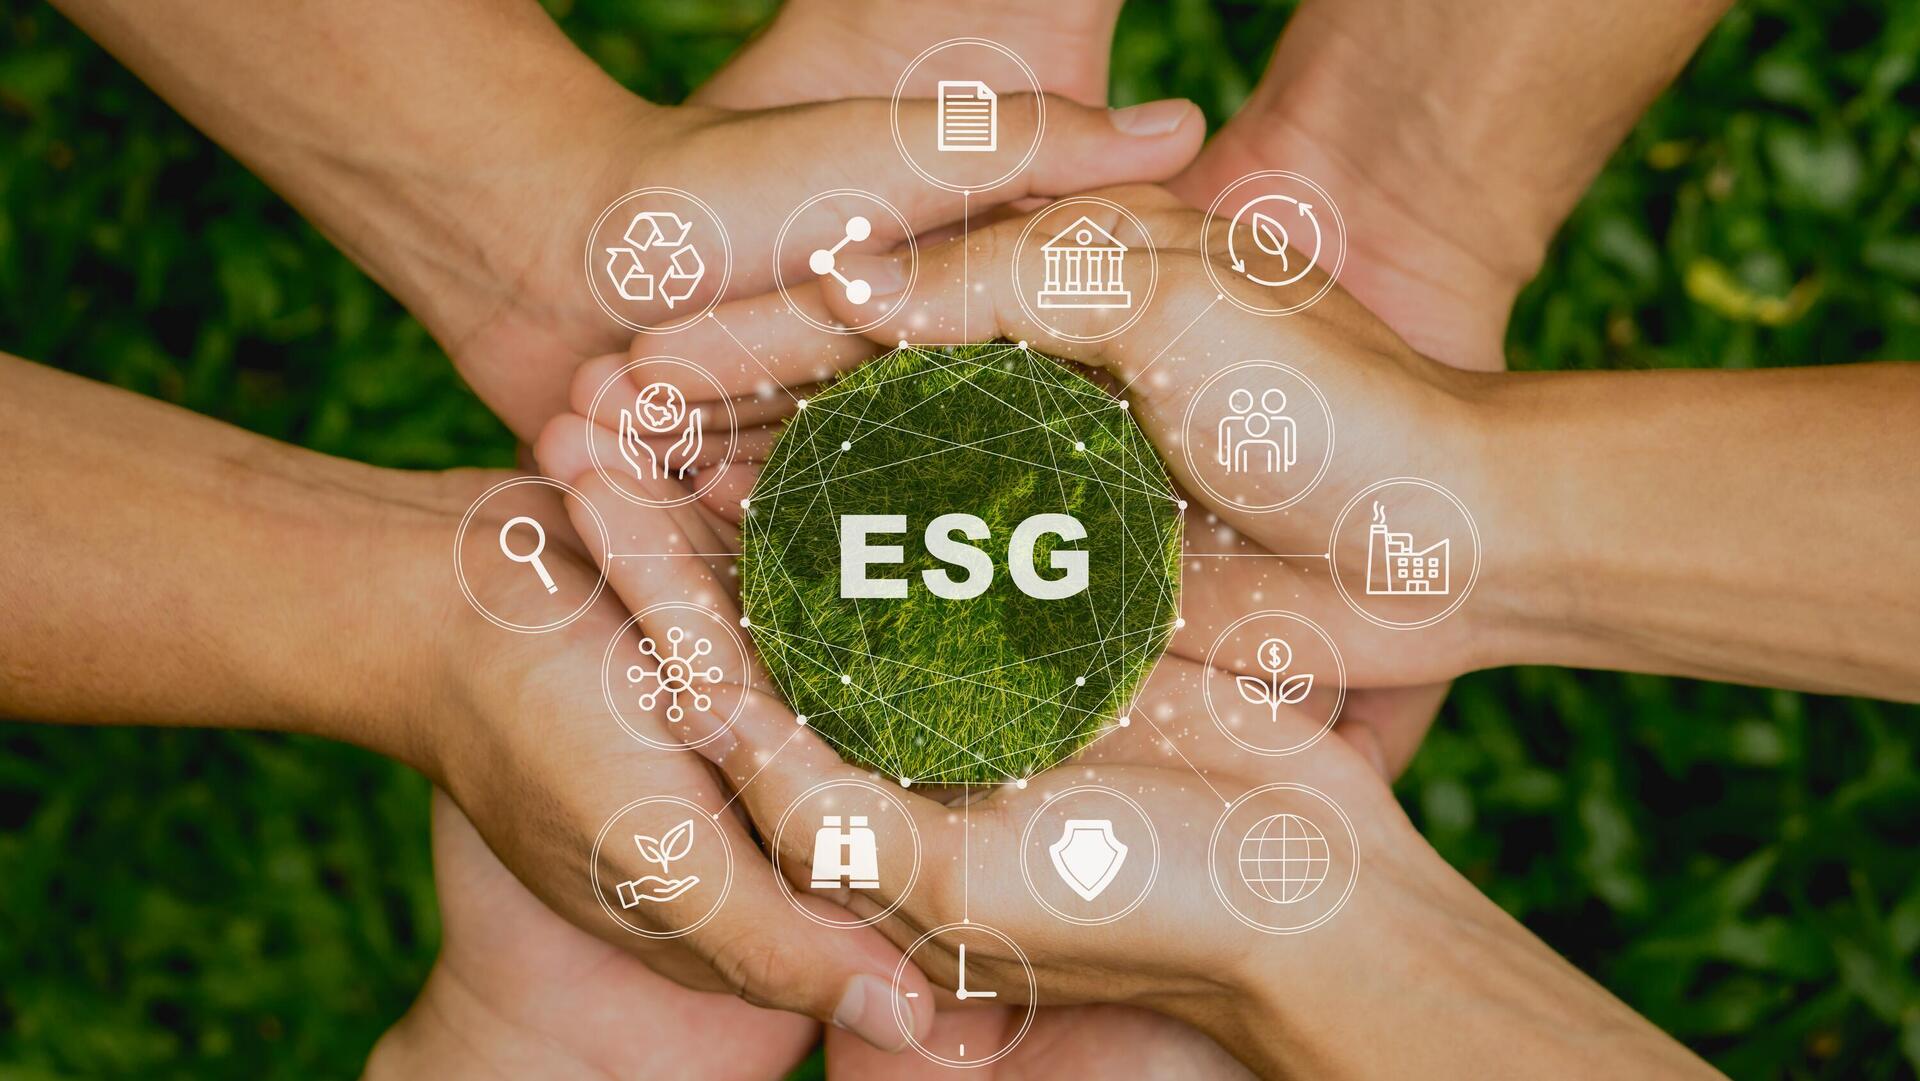 אמדוקס פועלת במודל ה- ESG ומחברת בין הצלחה עסקית להשפעה חיובית על הקהילה